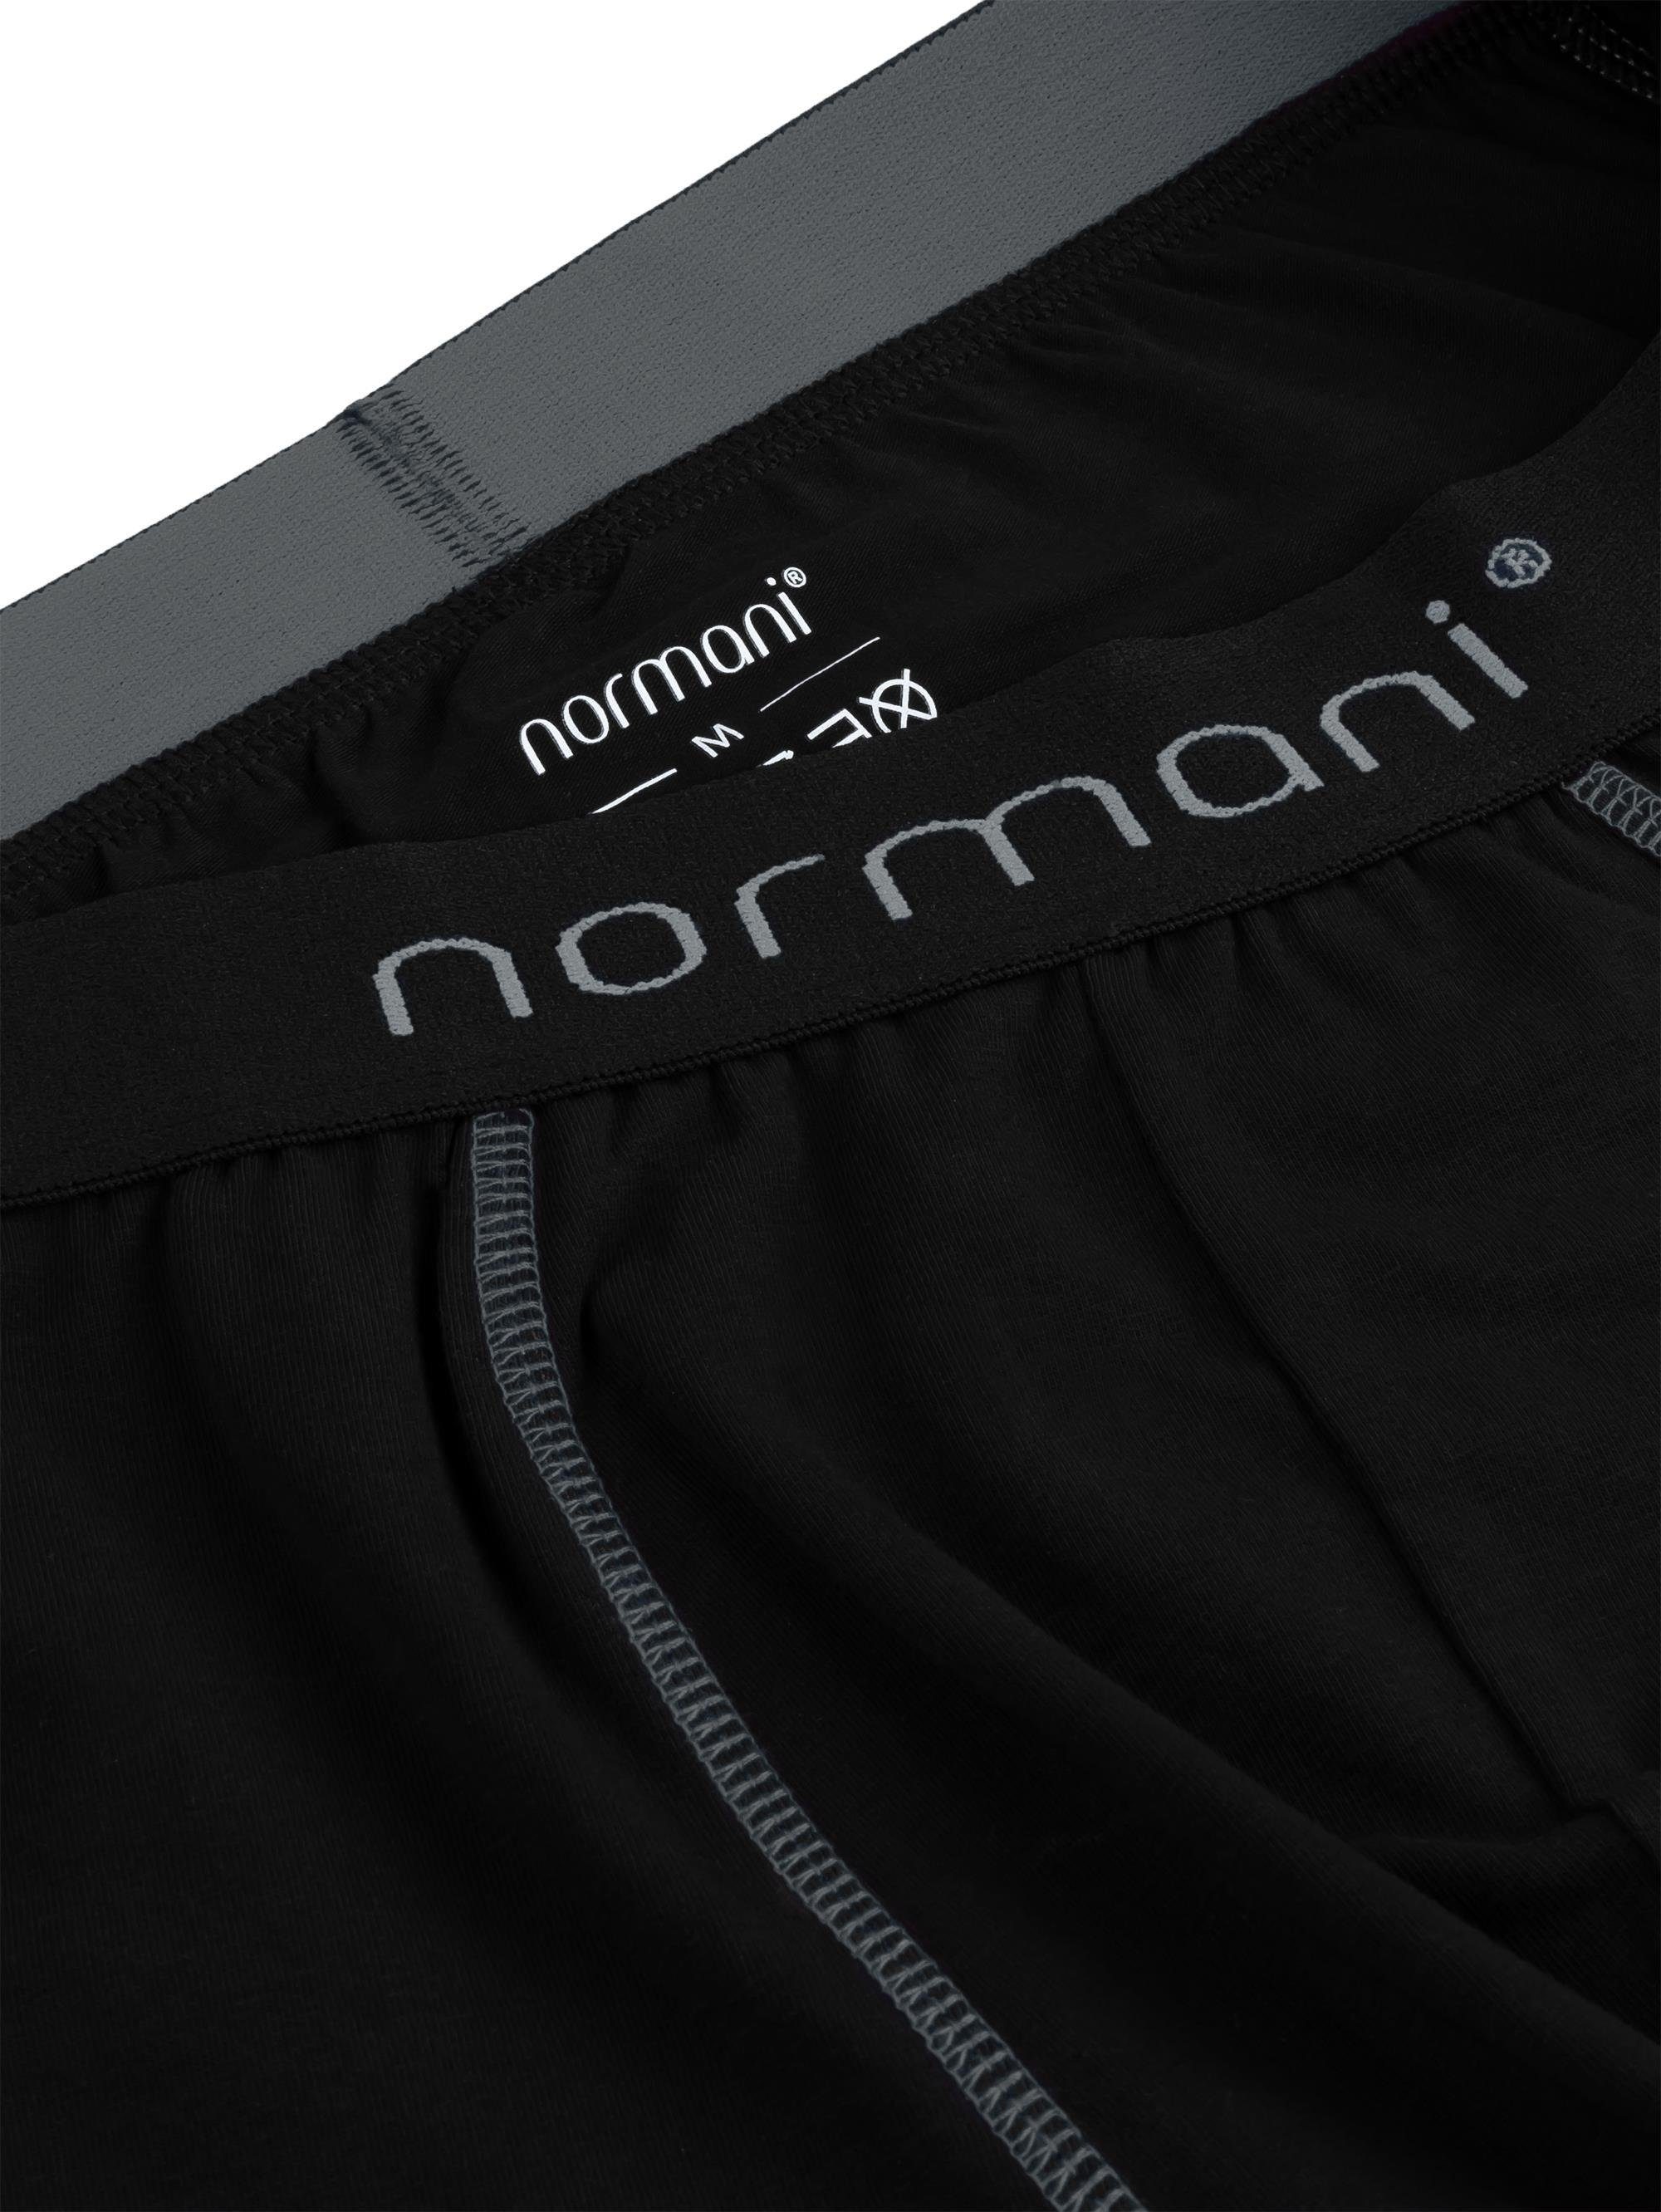 normani Boxershorts 6 Baumwoll-Boxershorts Grau Unterhose Baumwolle aus atmungsaktiver Männer für Herren